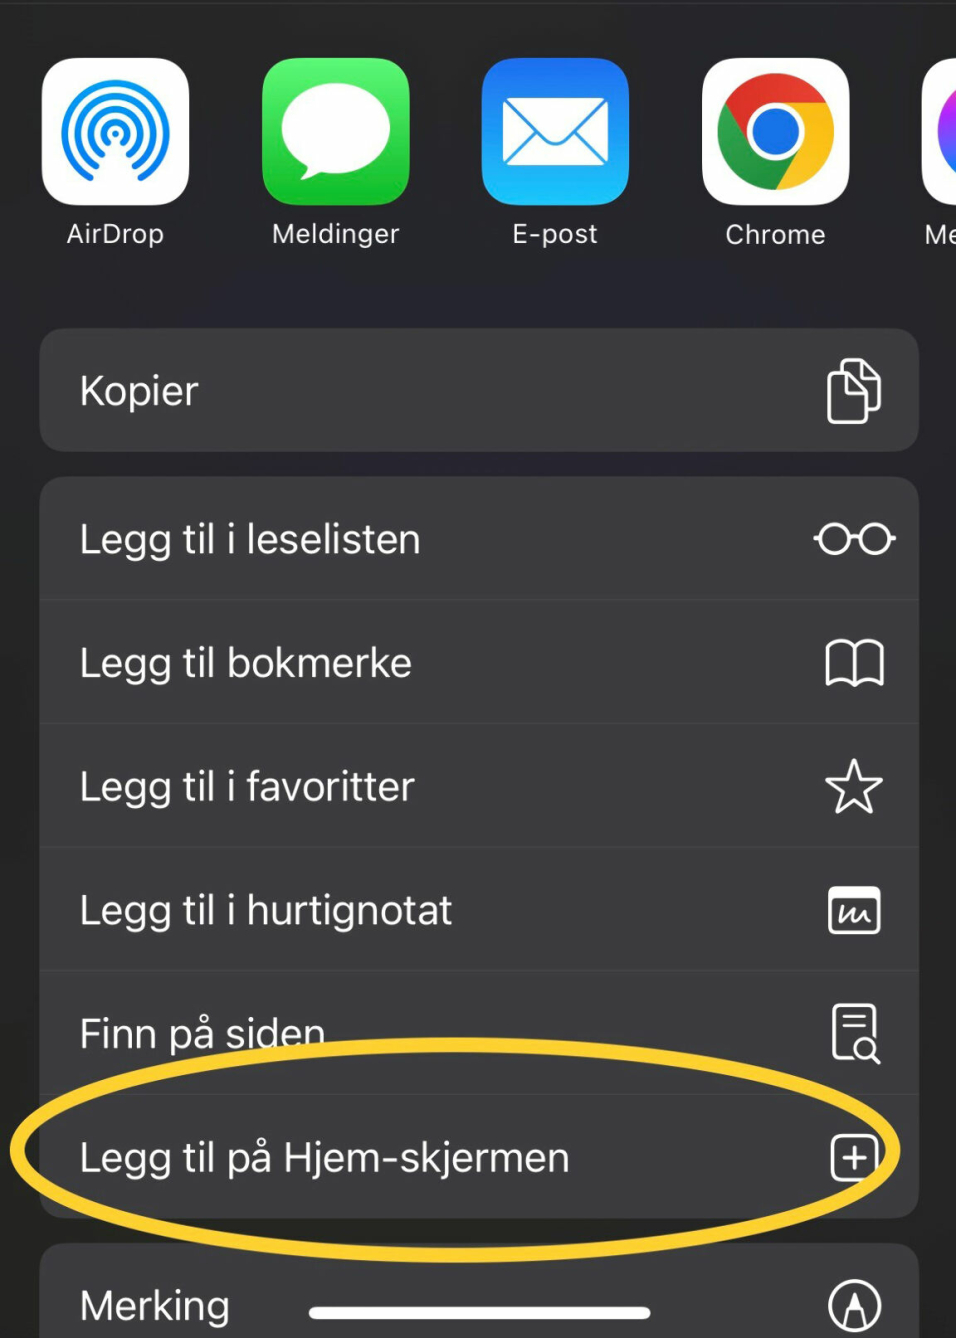 HJEM-SKJERM: Trykk på Legg til på Hjem-skjermen.